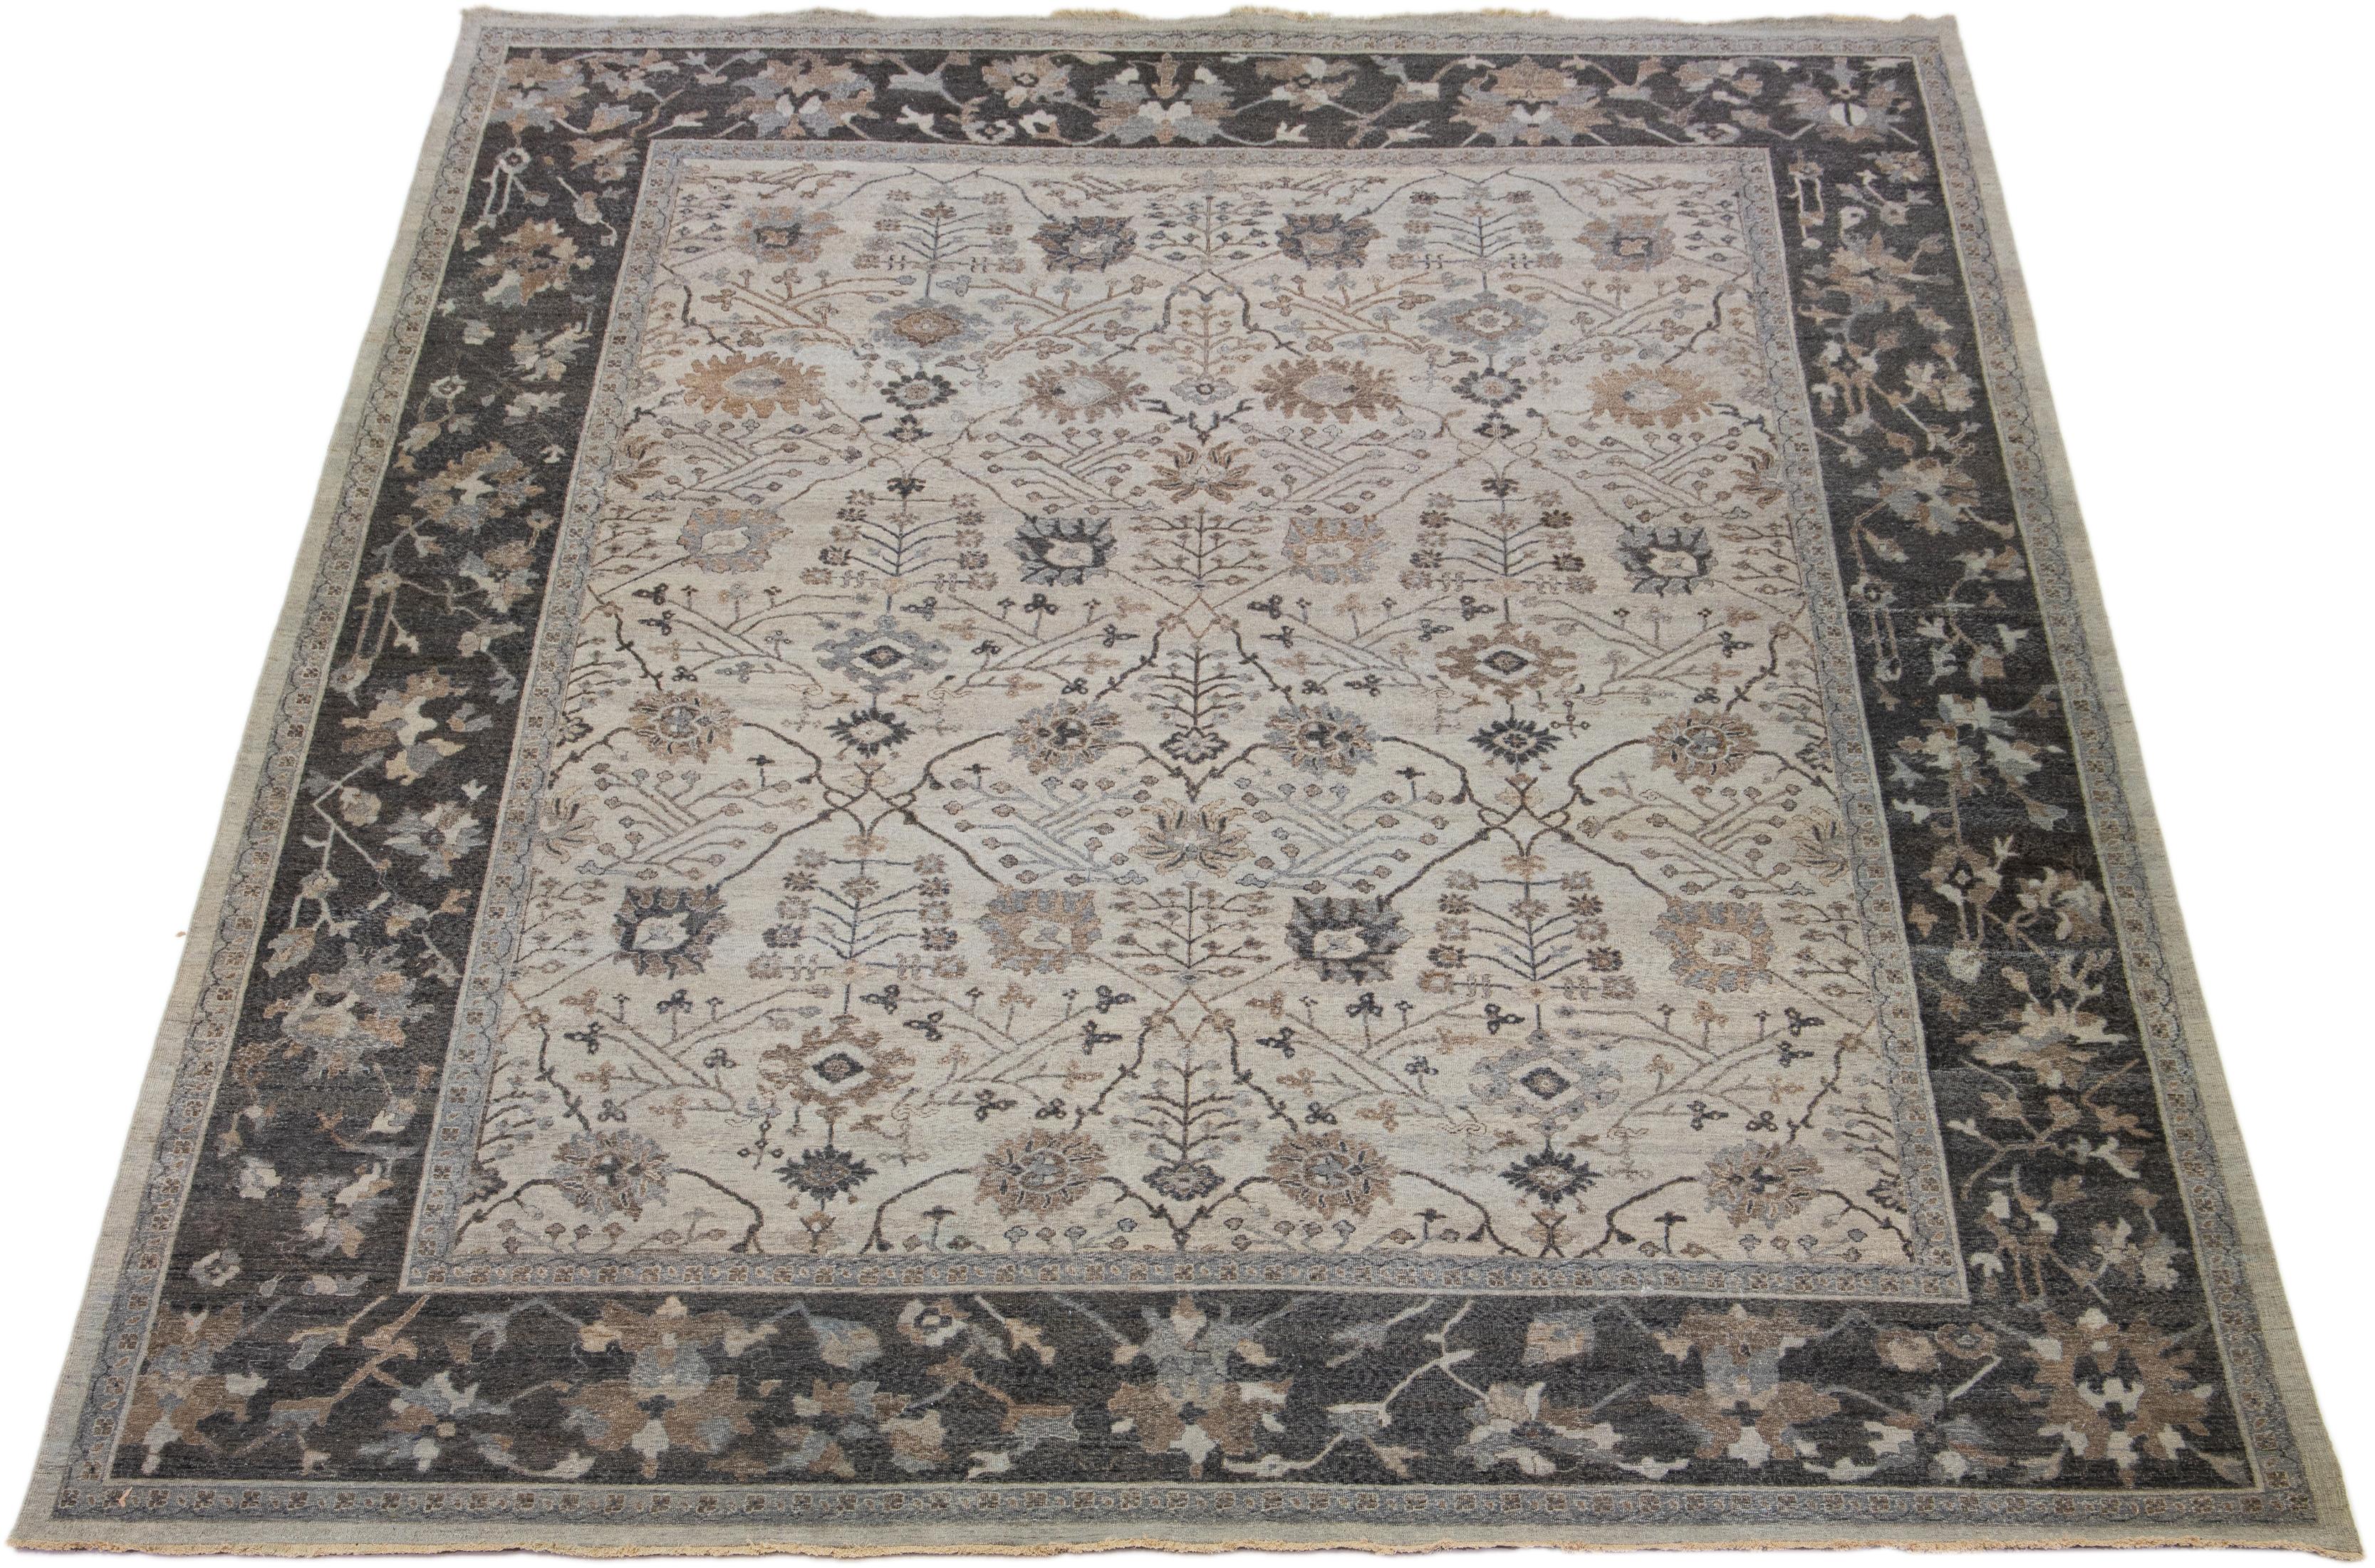 Die Artisan-Linie von Apadana bringt einen exquisiten antiken Stil in jeden Raum. Dieser handgeknüpfte Teppich zeigt ein wunderschönes florales Allover-Muster mit einem grauen Farbschema und mehrfarbigen Akzenten. Es ist 11' 09